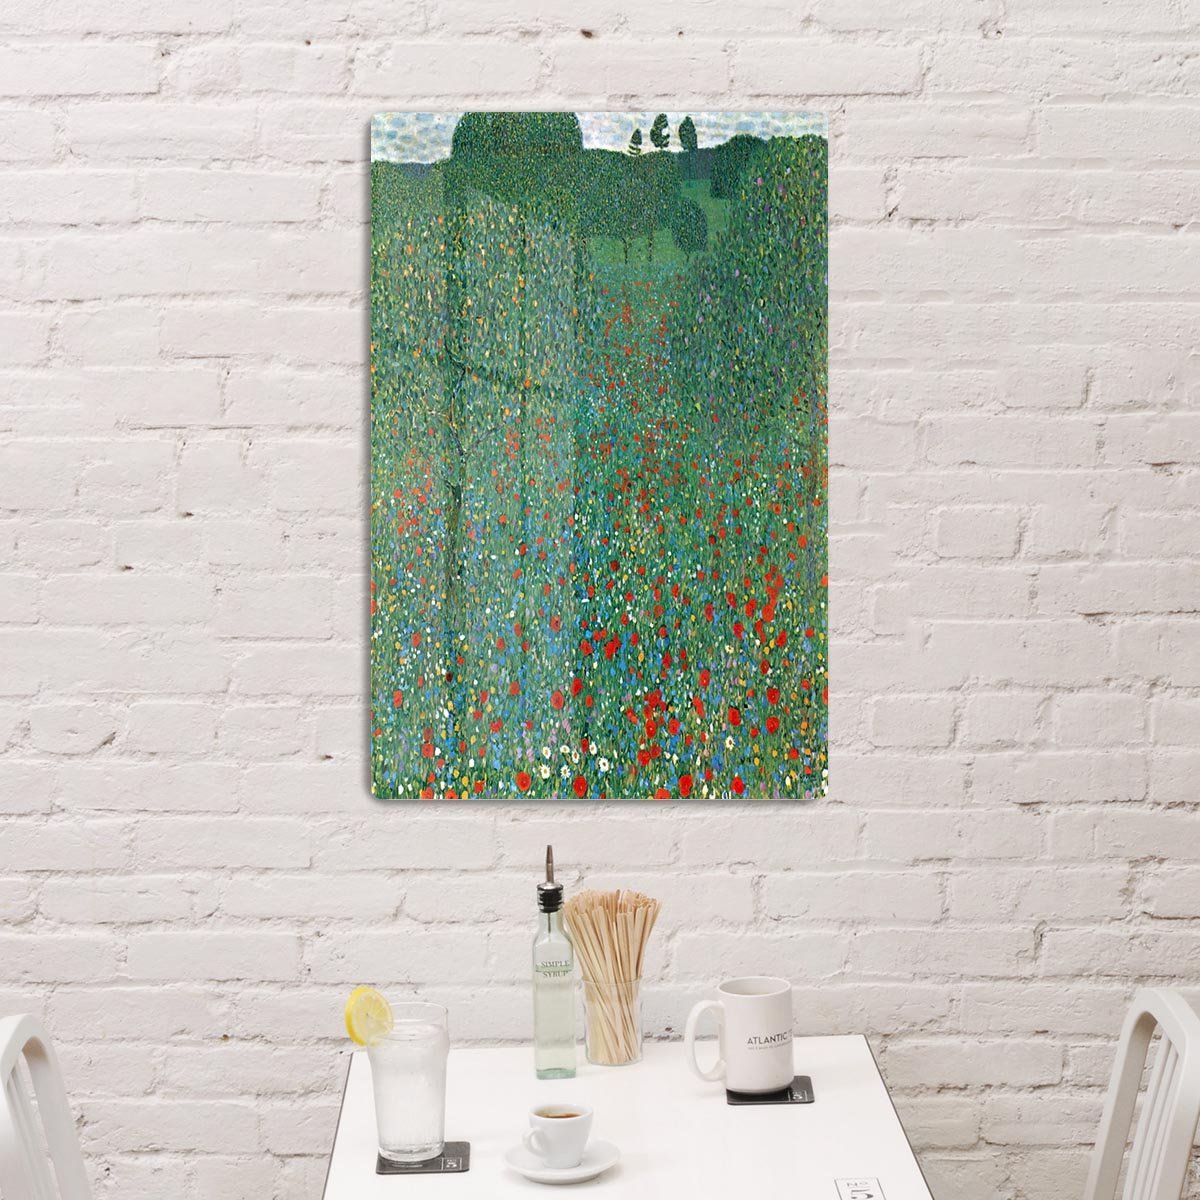 Poppy Field by Klimt HD Metal Print